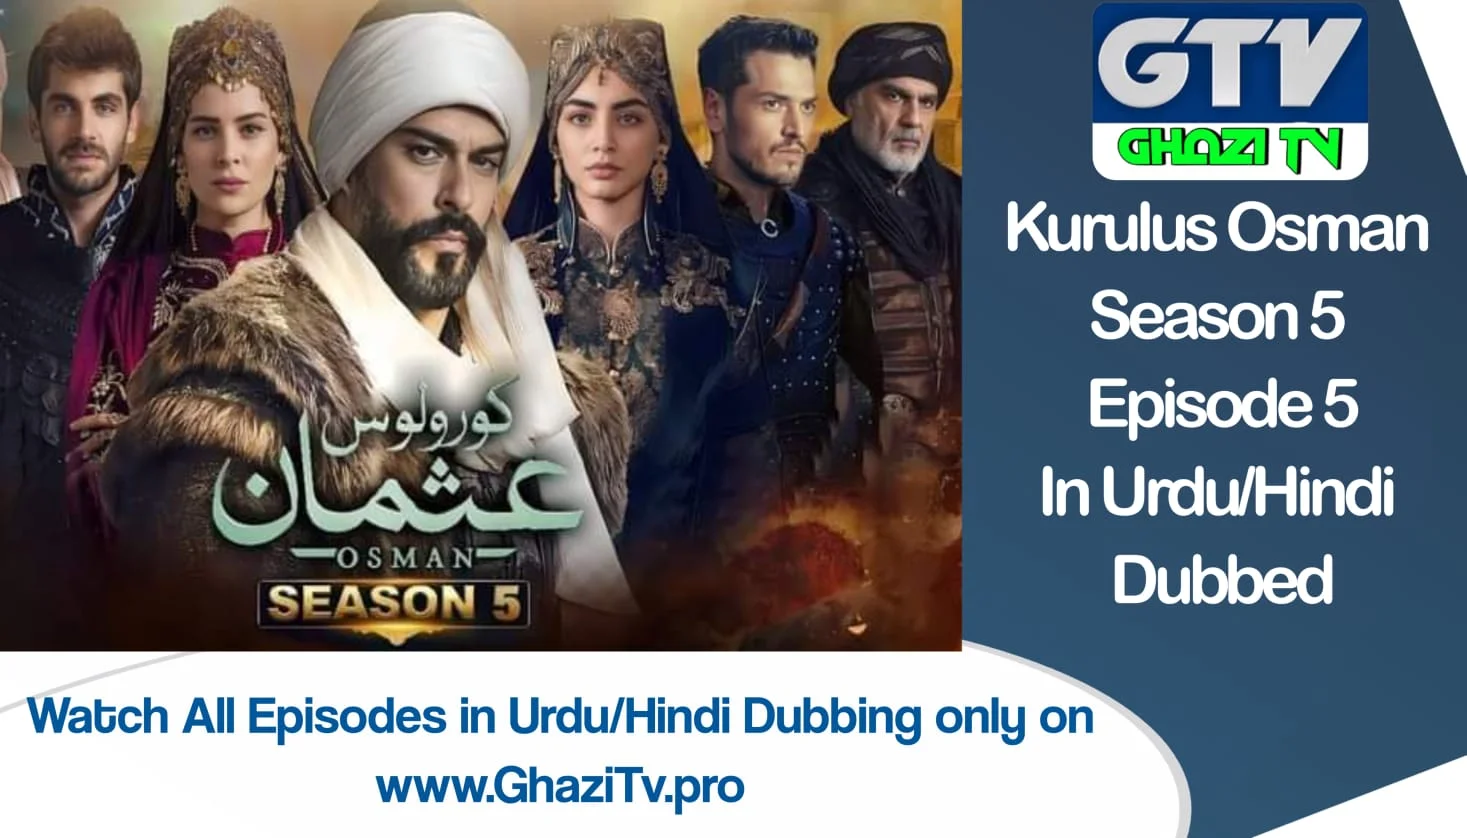 Kurulus Osman Season 5 Episode 5 in Urdu Dubbing